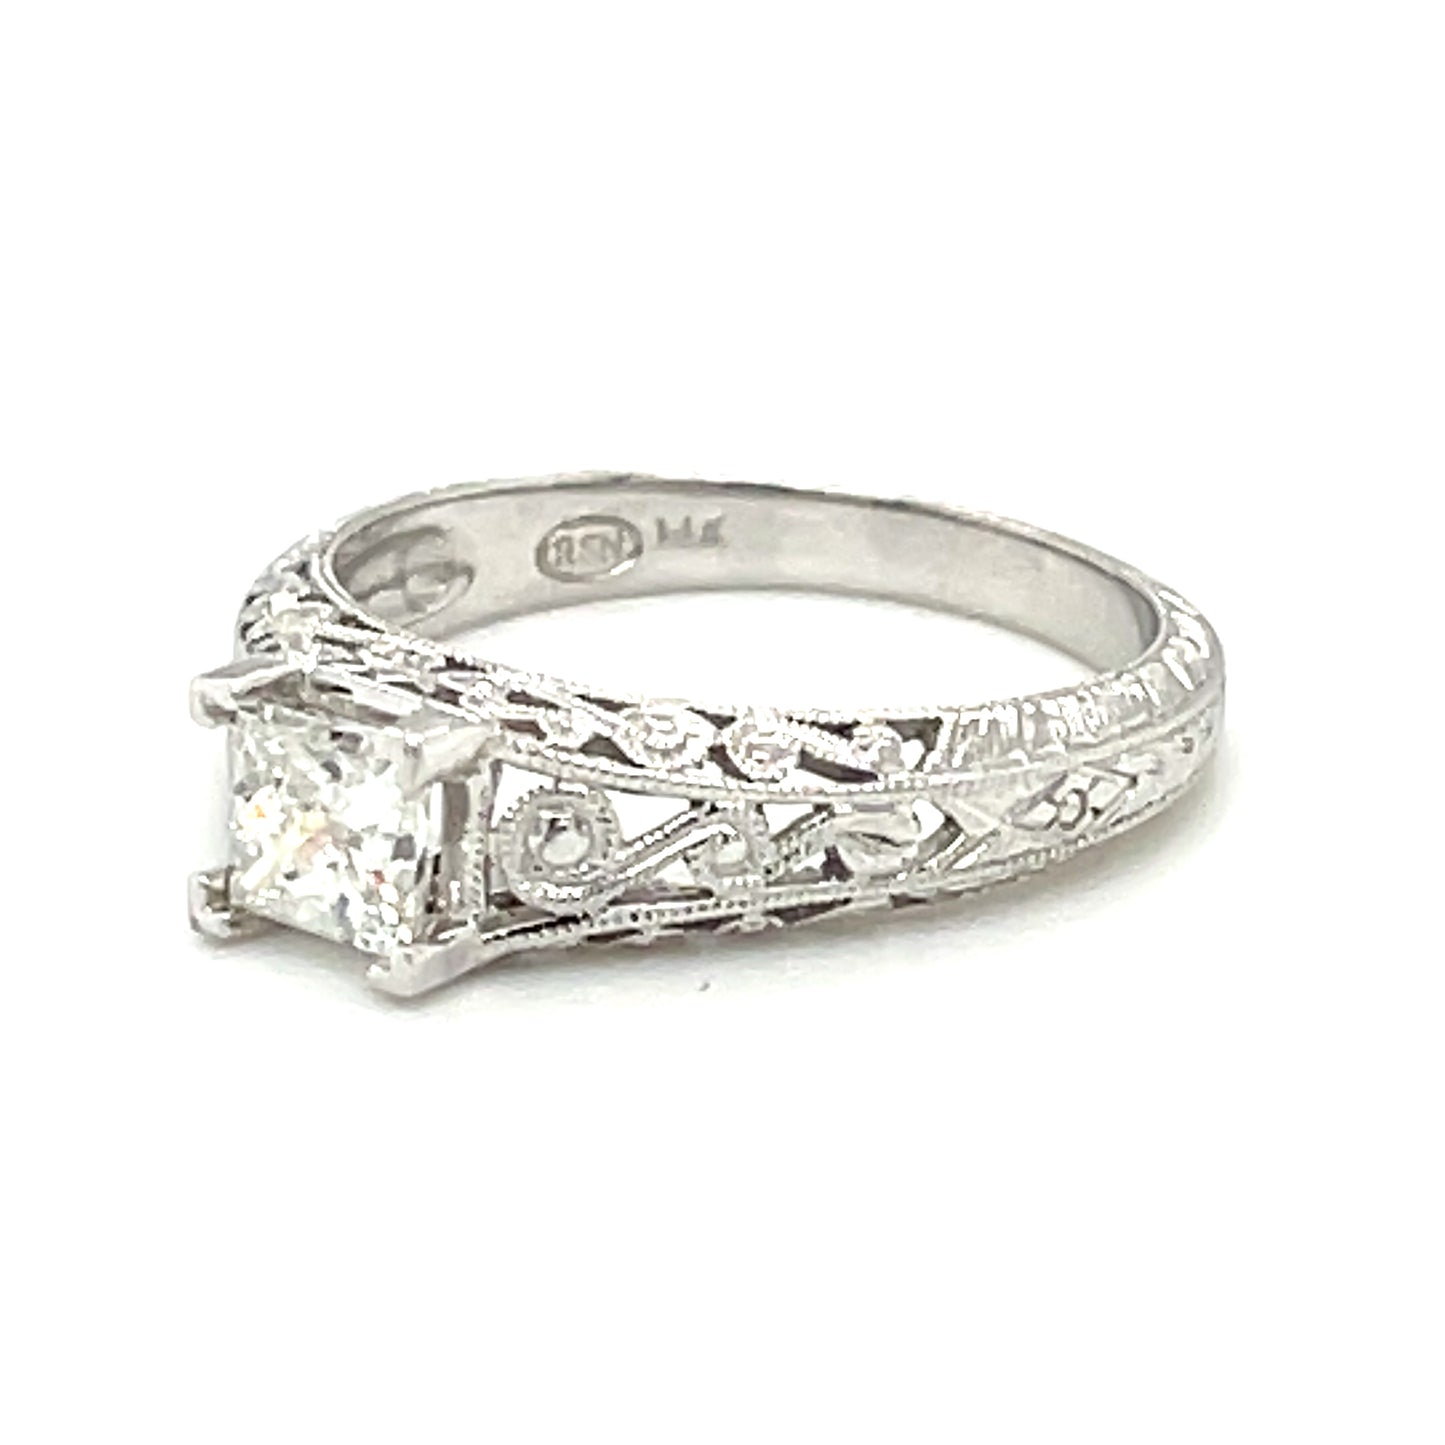 Princess Diamond Engagement Estate Ring with Vintage Filigree Design in 14-Karat White Gold